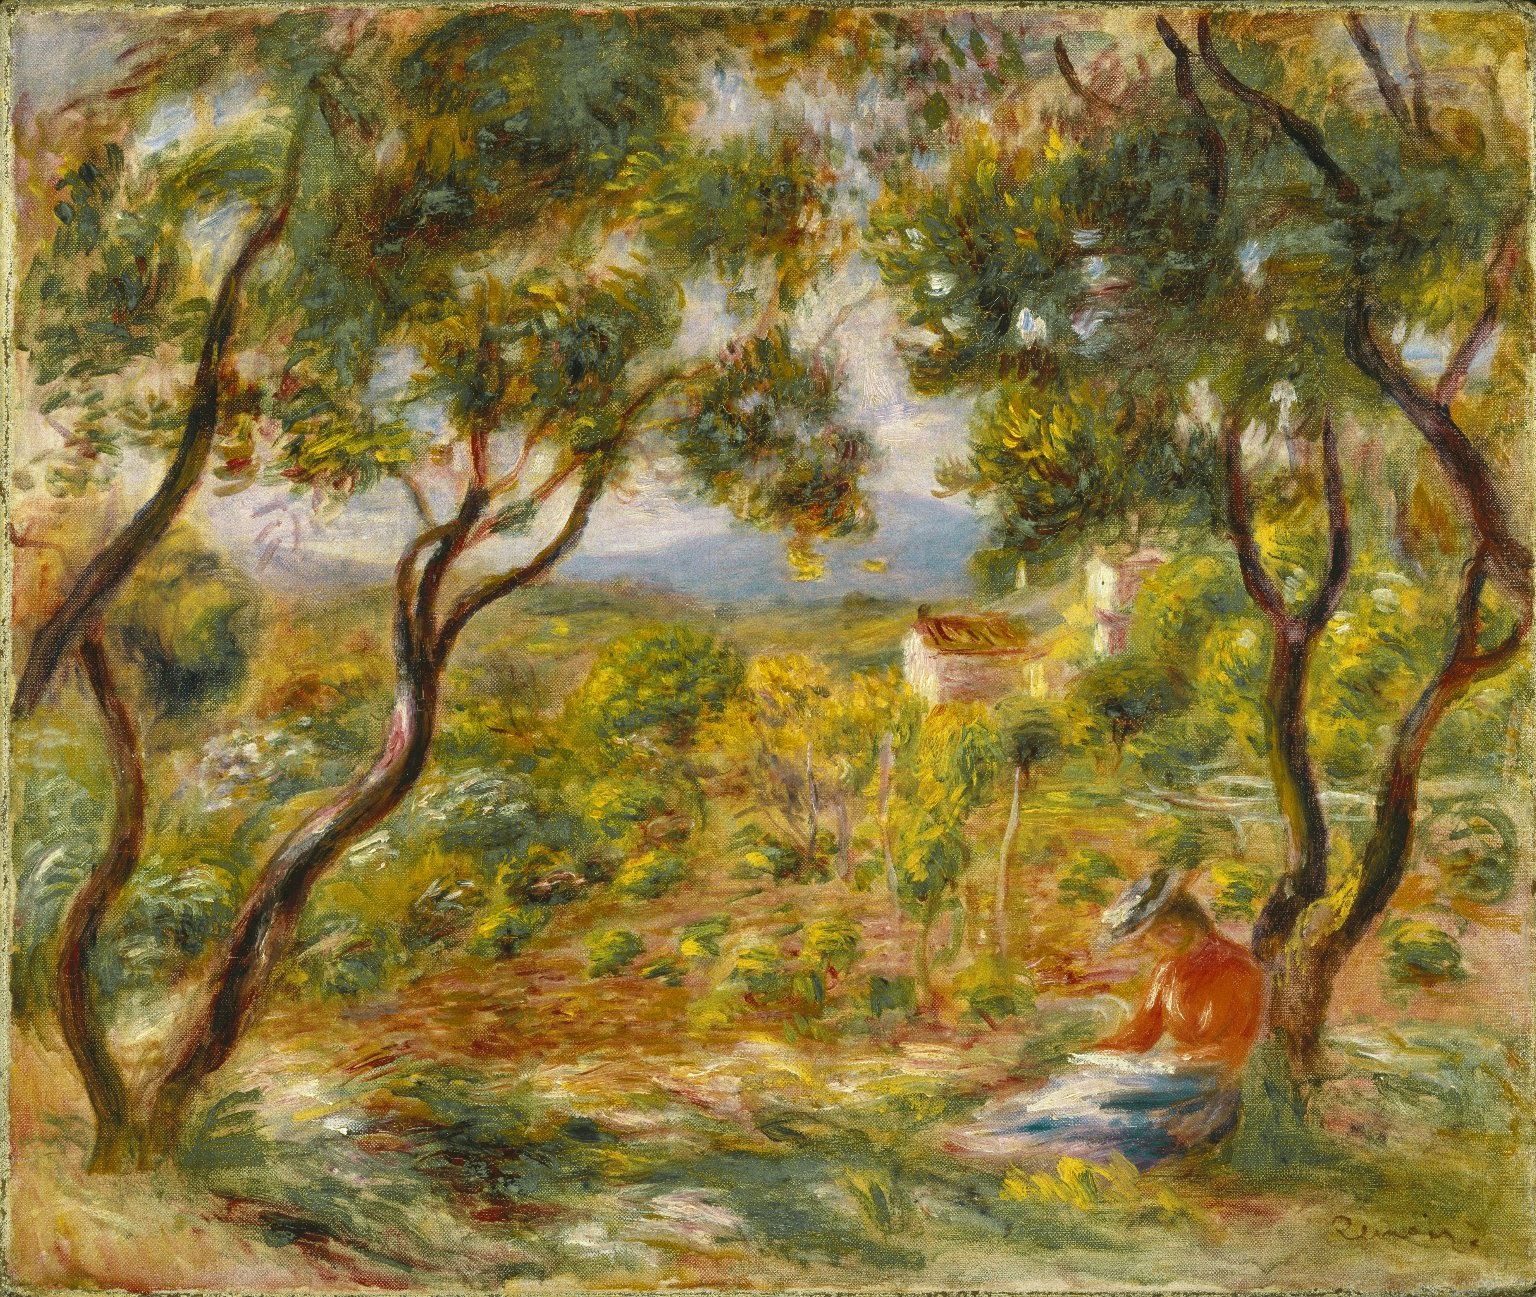 Pierre+Auguste+Renoir-1841-1-19 (719).jpg